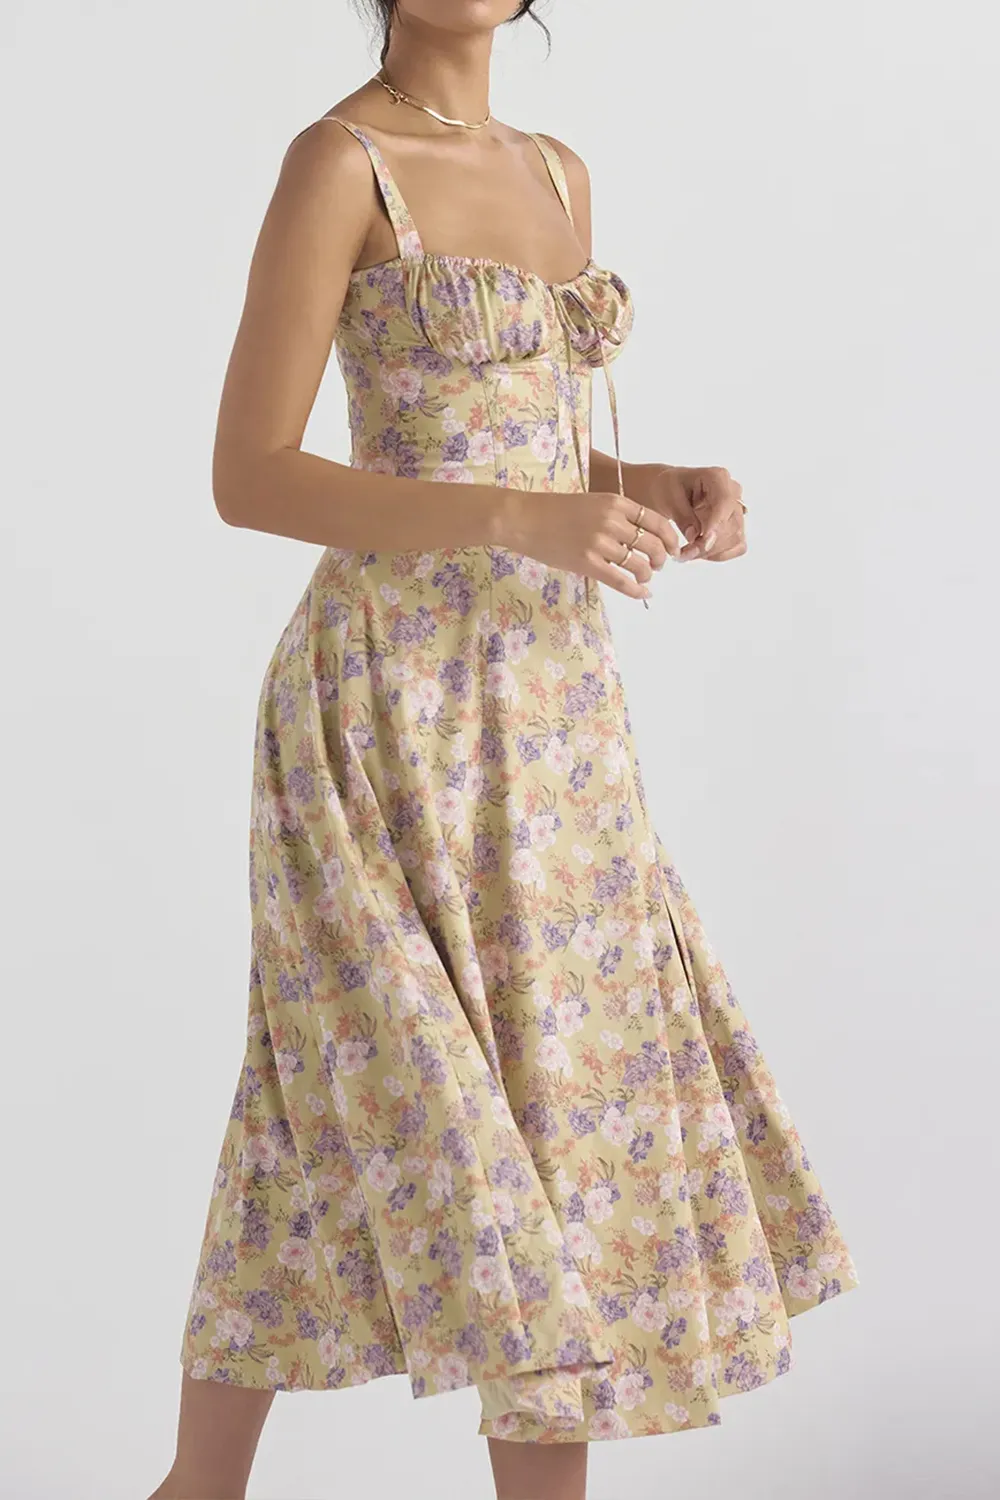 Saminey Nakans Floral Bustier Midriff Waist Shaper Dress